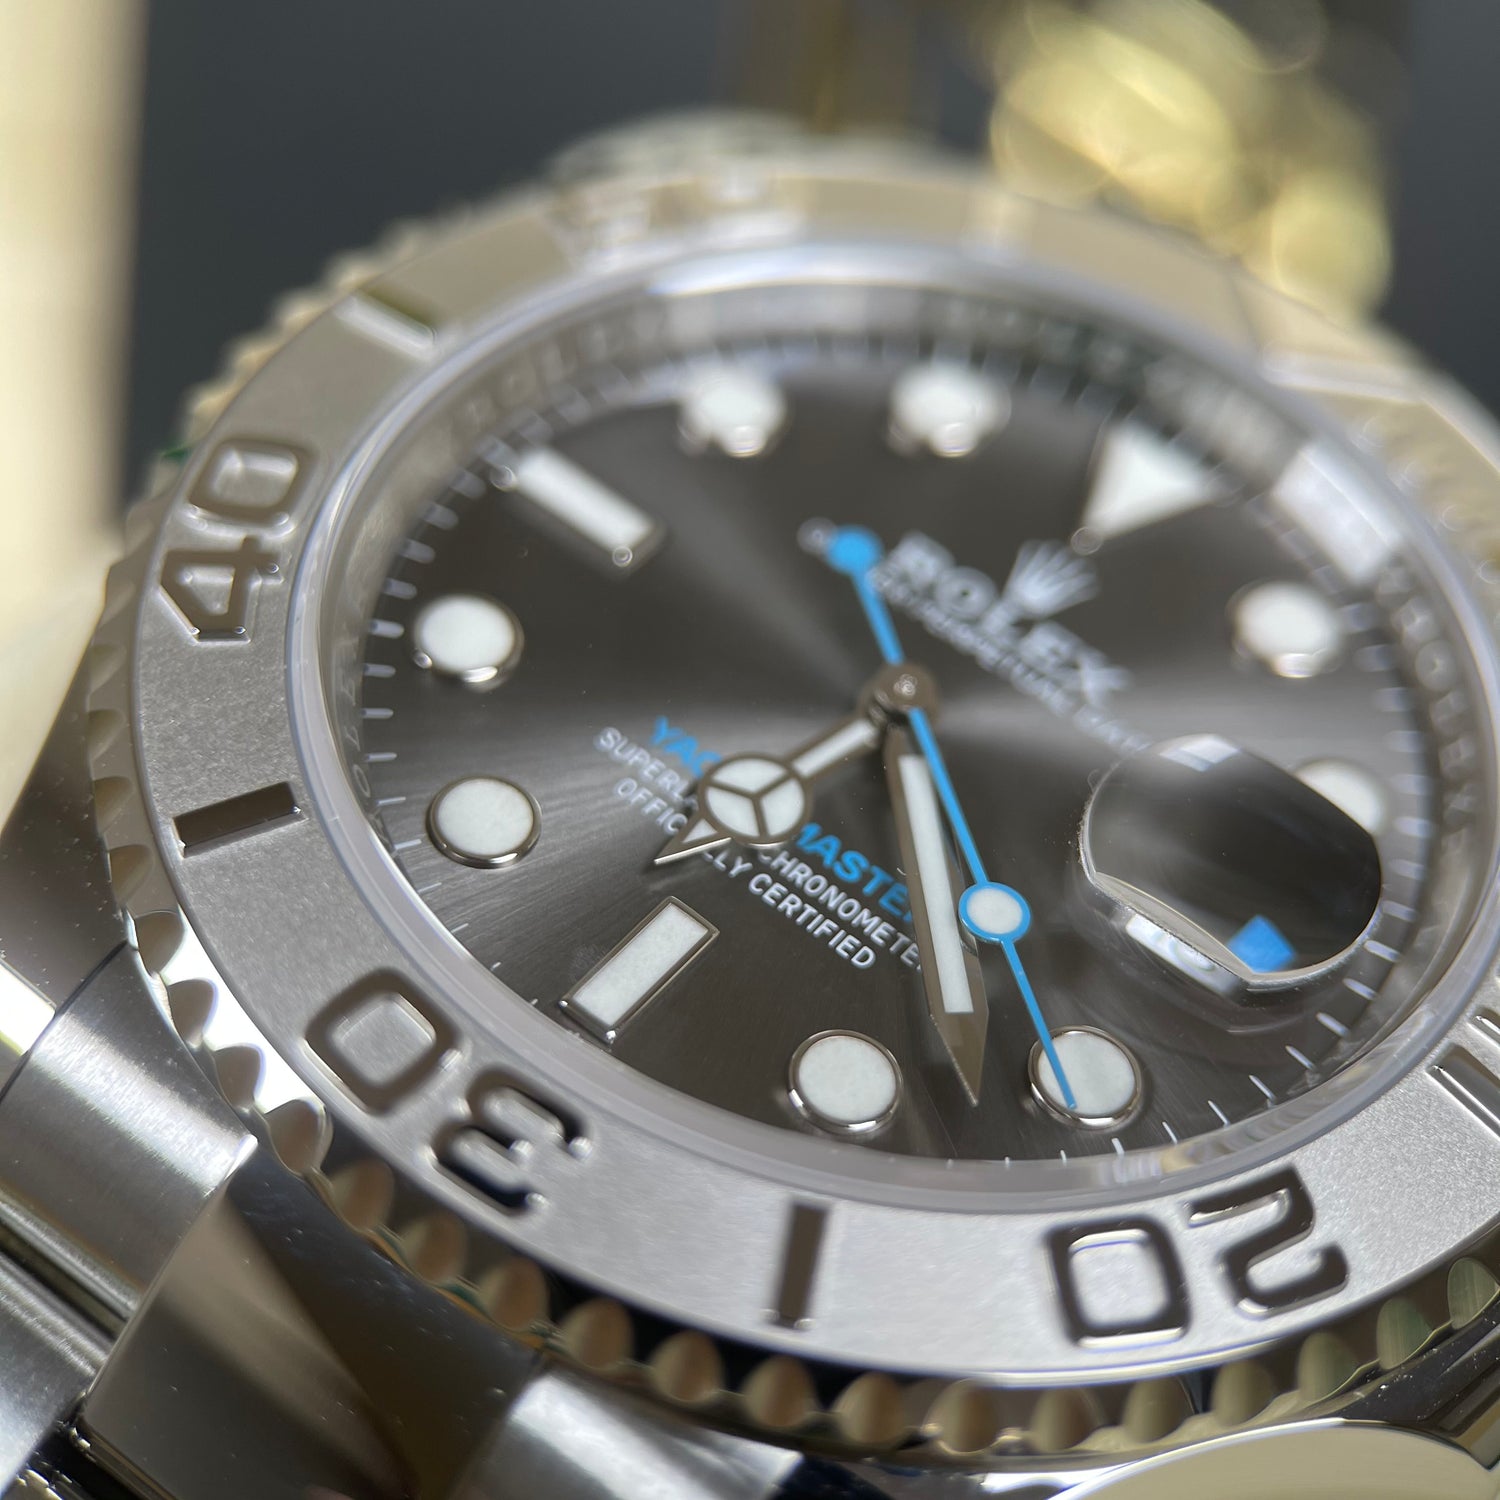 Rolex Yacht-Master 40 126622 Rhodium Dial 2021 New Unworn Watch